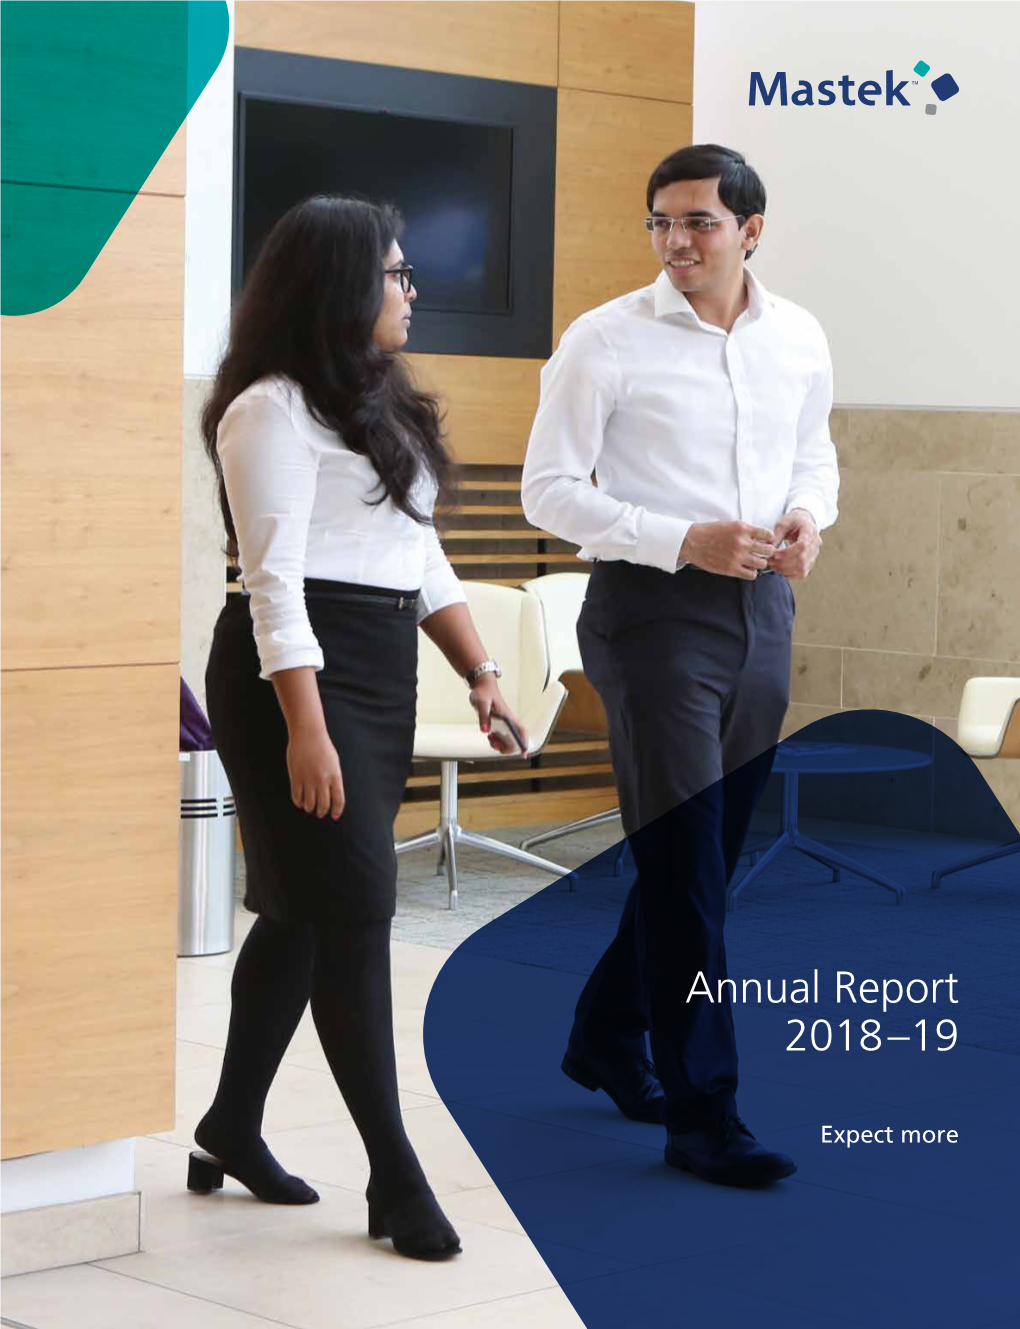 Mastek Annual Report 2018-19